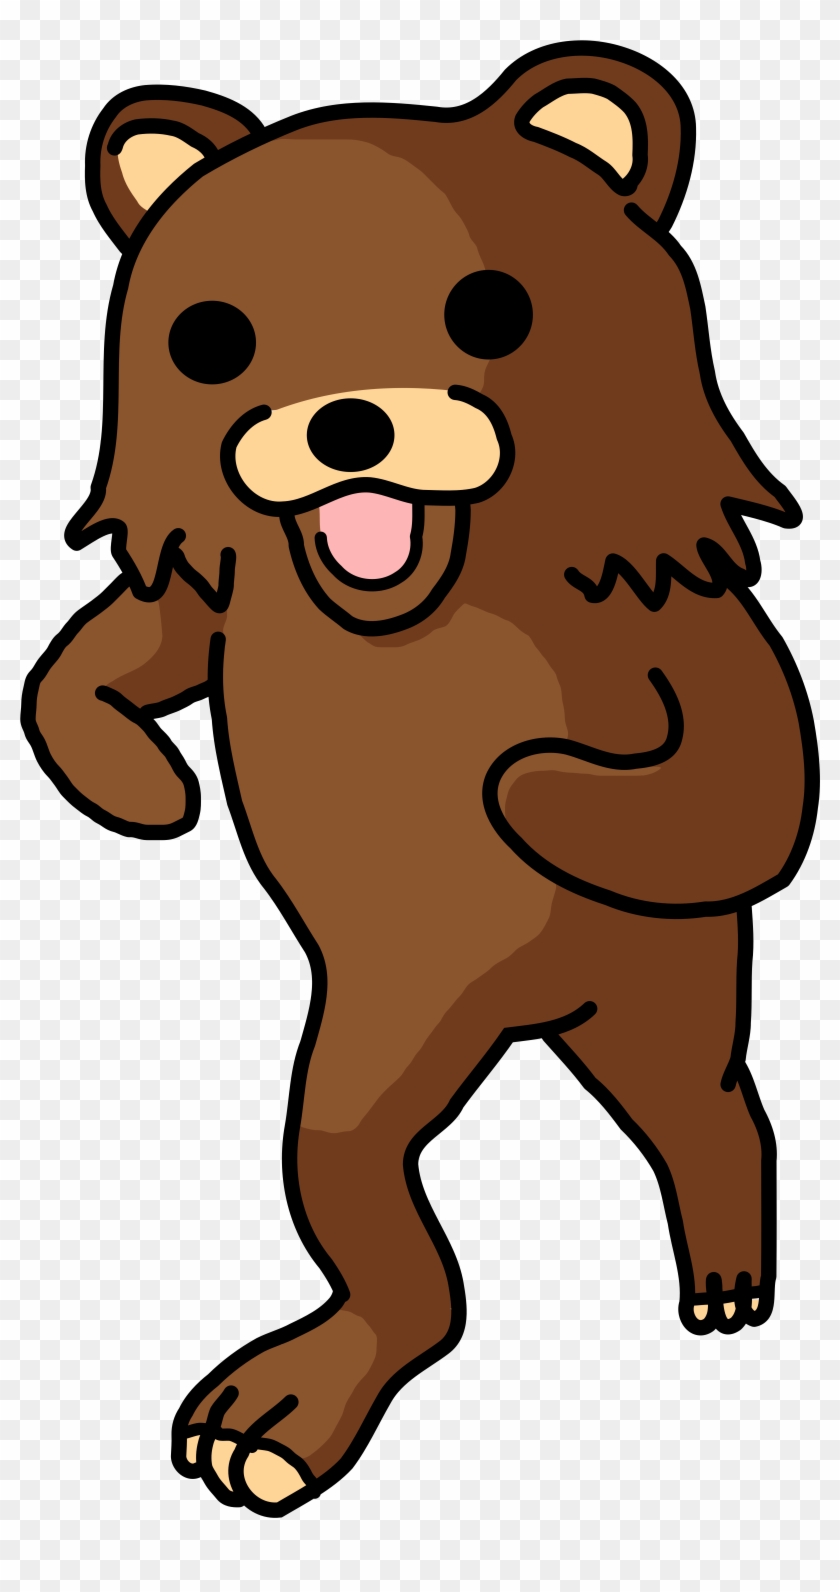 Barbarian] Teddy Bear - Barbarian] Teddy Bear #460136